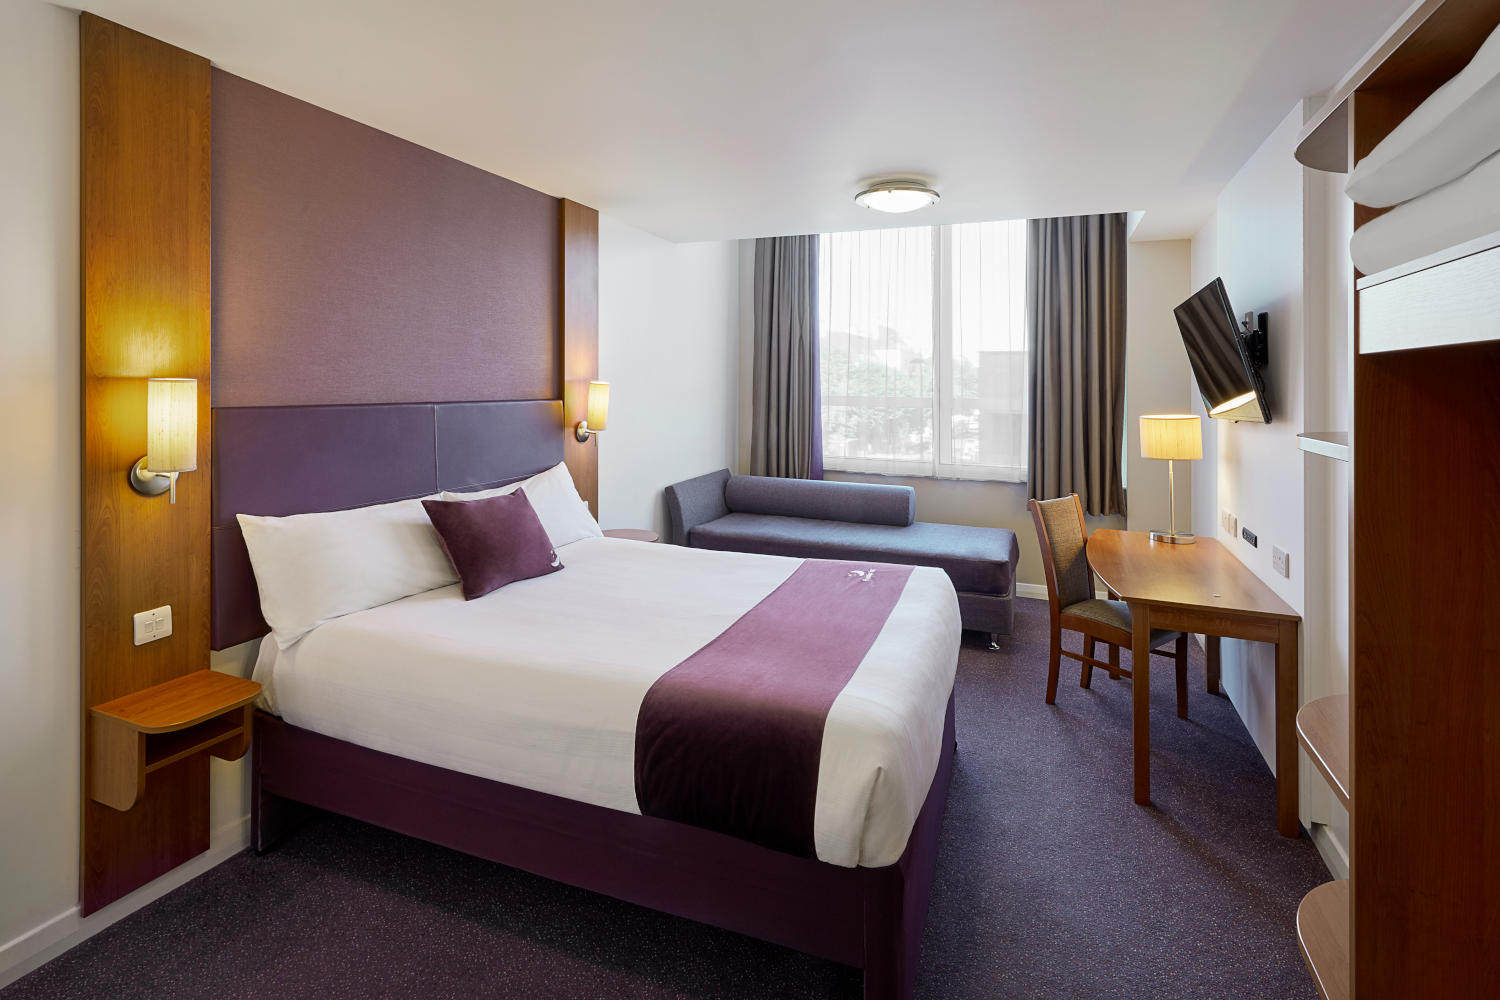 Premier Inn bedroom Premier Inn Wrexham City Centre hotel Wrexham 03333 219307